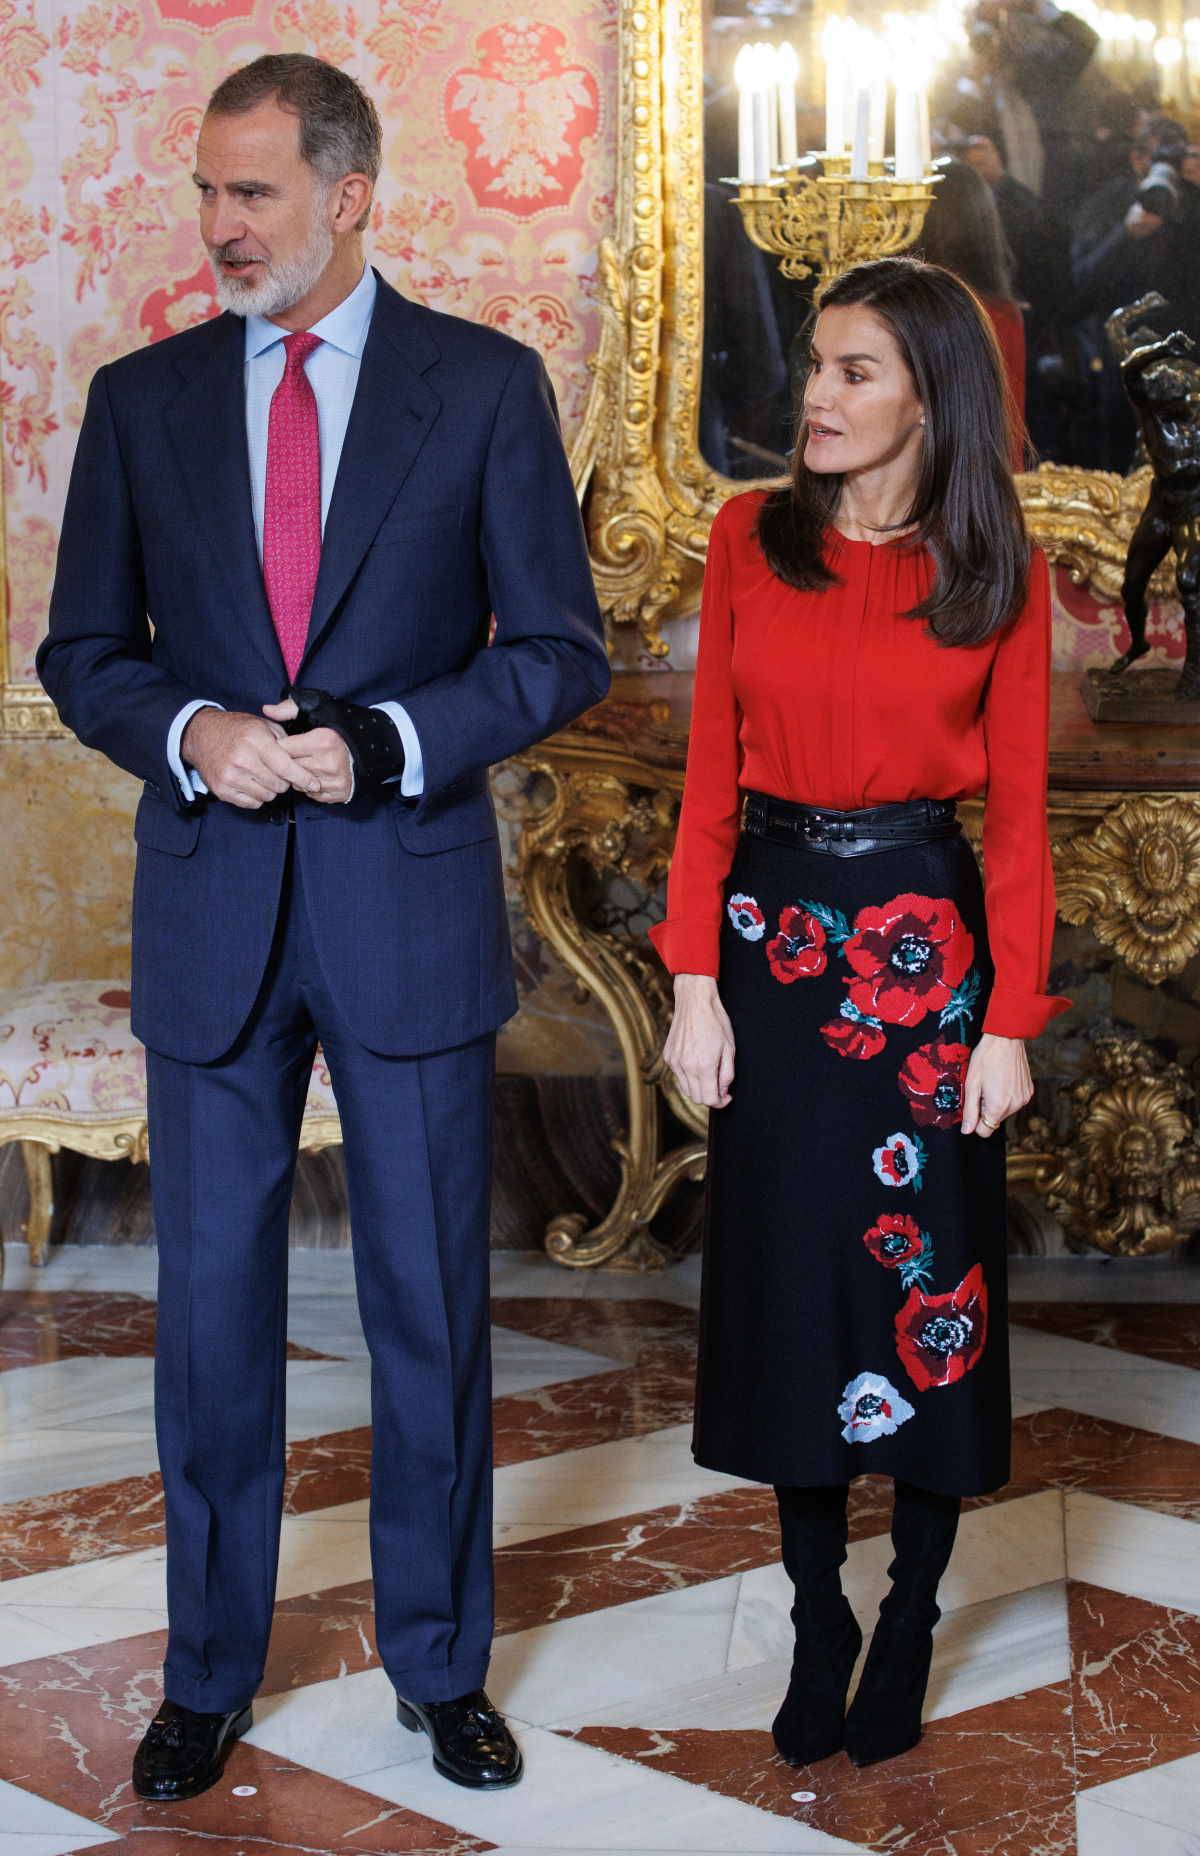 Stylizacja królowej Letycji kozaki zamszowe, czerwona bluzka i spódnica w kwiaty. 